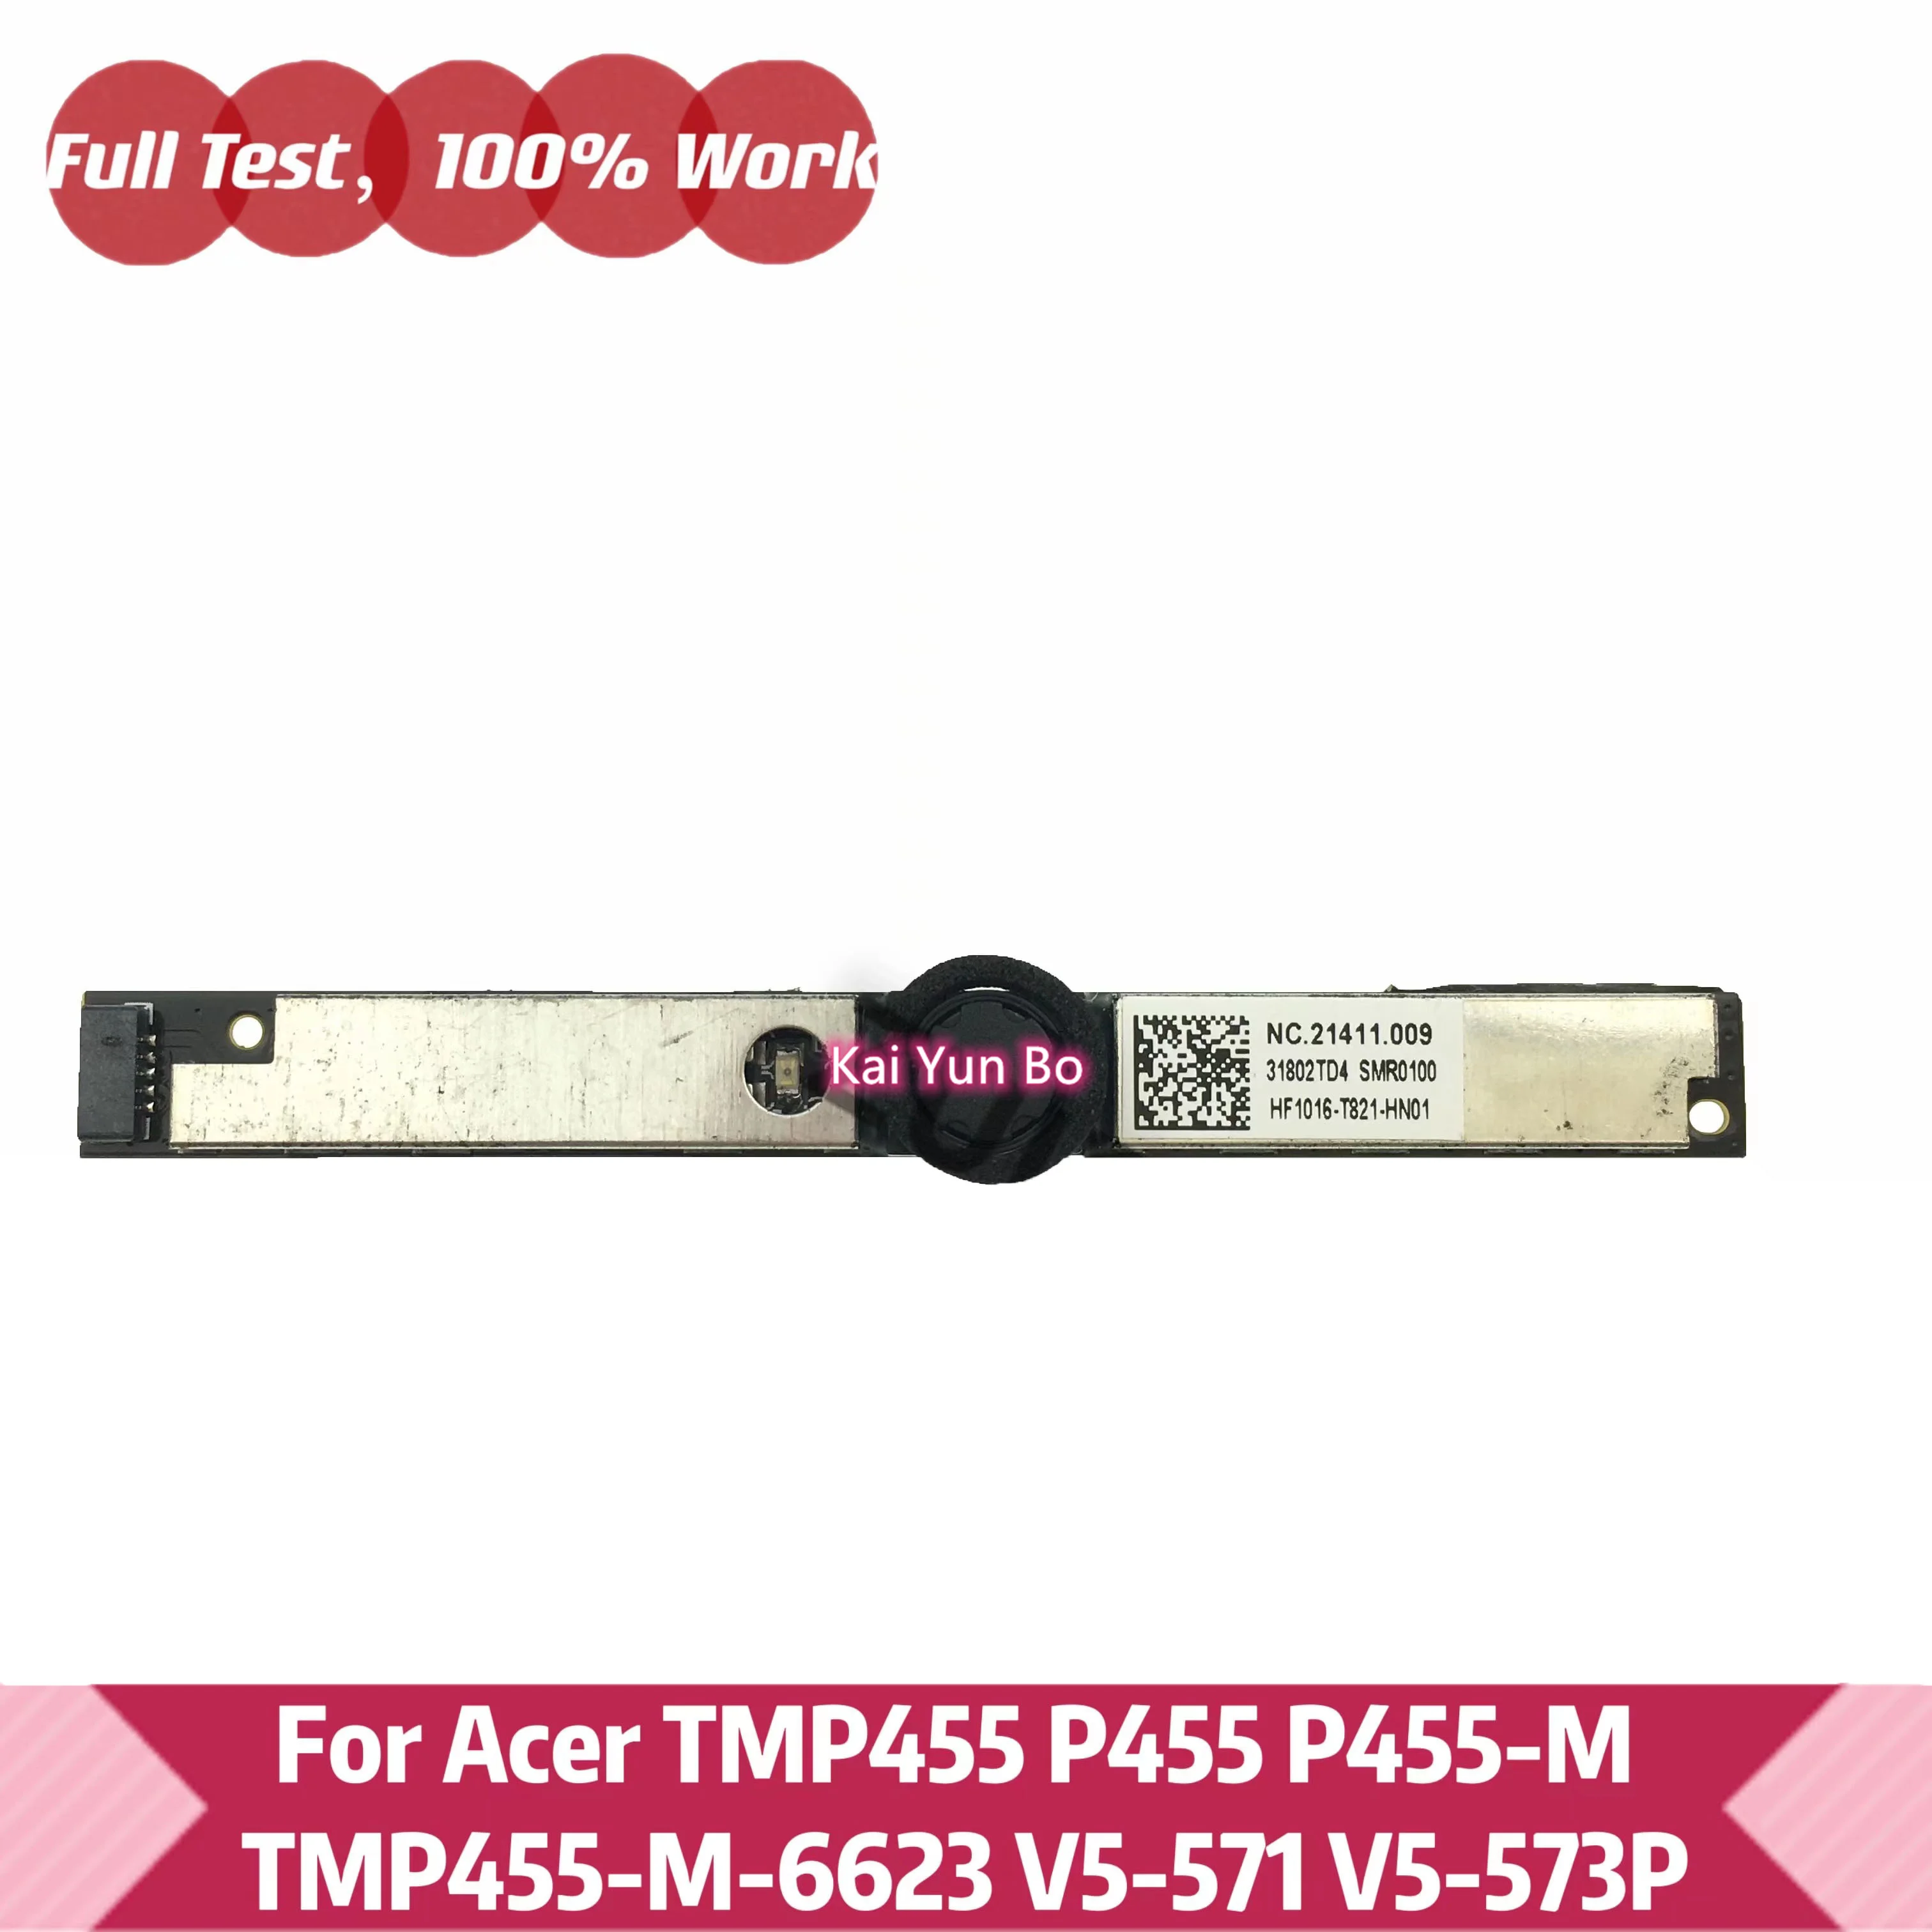 

For Acer TMP455 P455 P455-M TMP455-M-6623 V5-571 V5-573P Web Cam Camera Assembly Compatible Webcam Board NC.21411.009